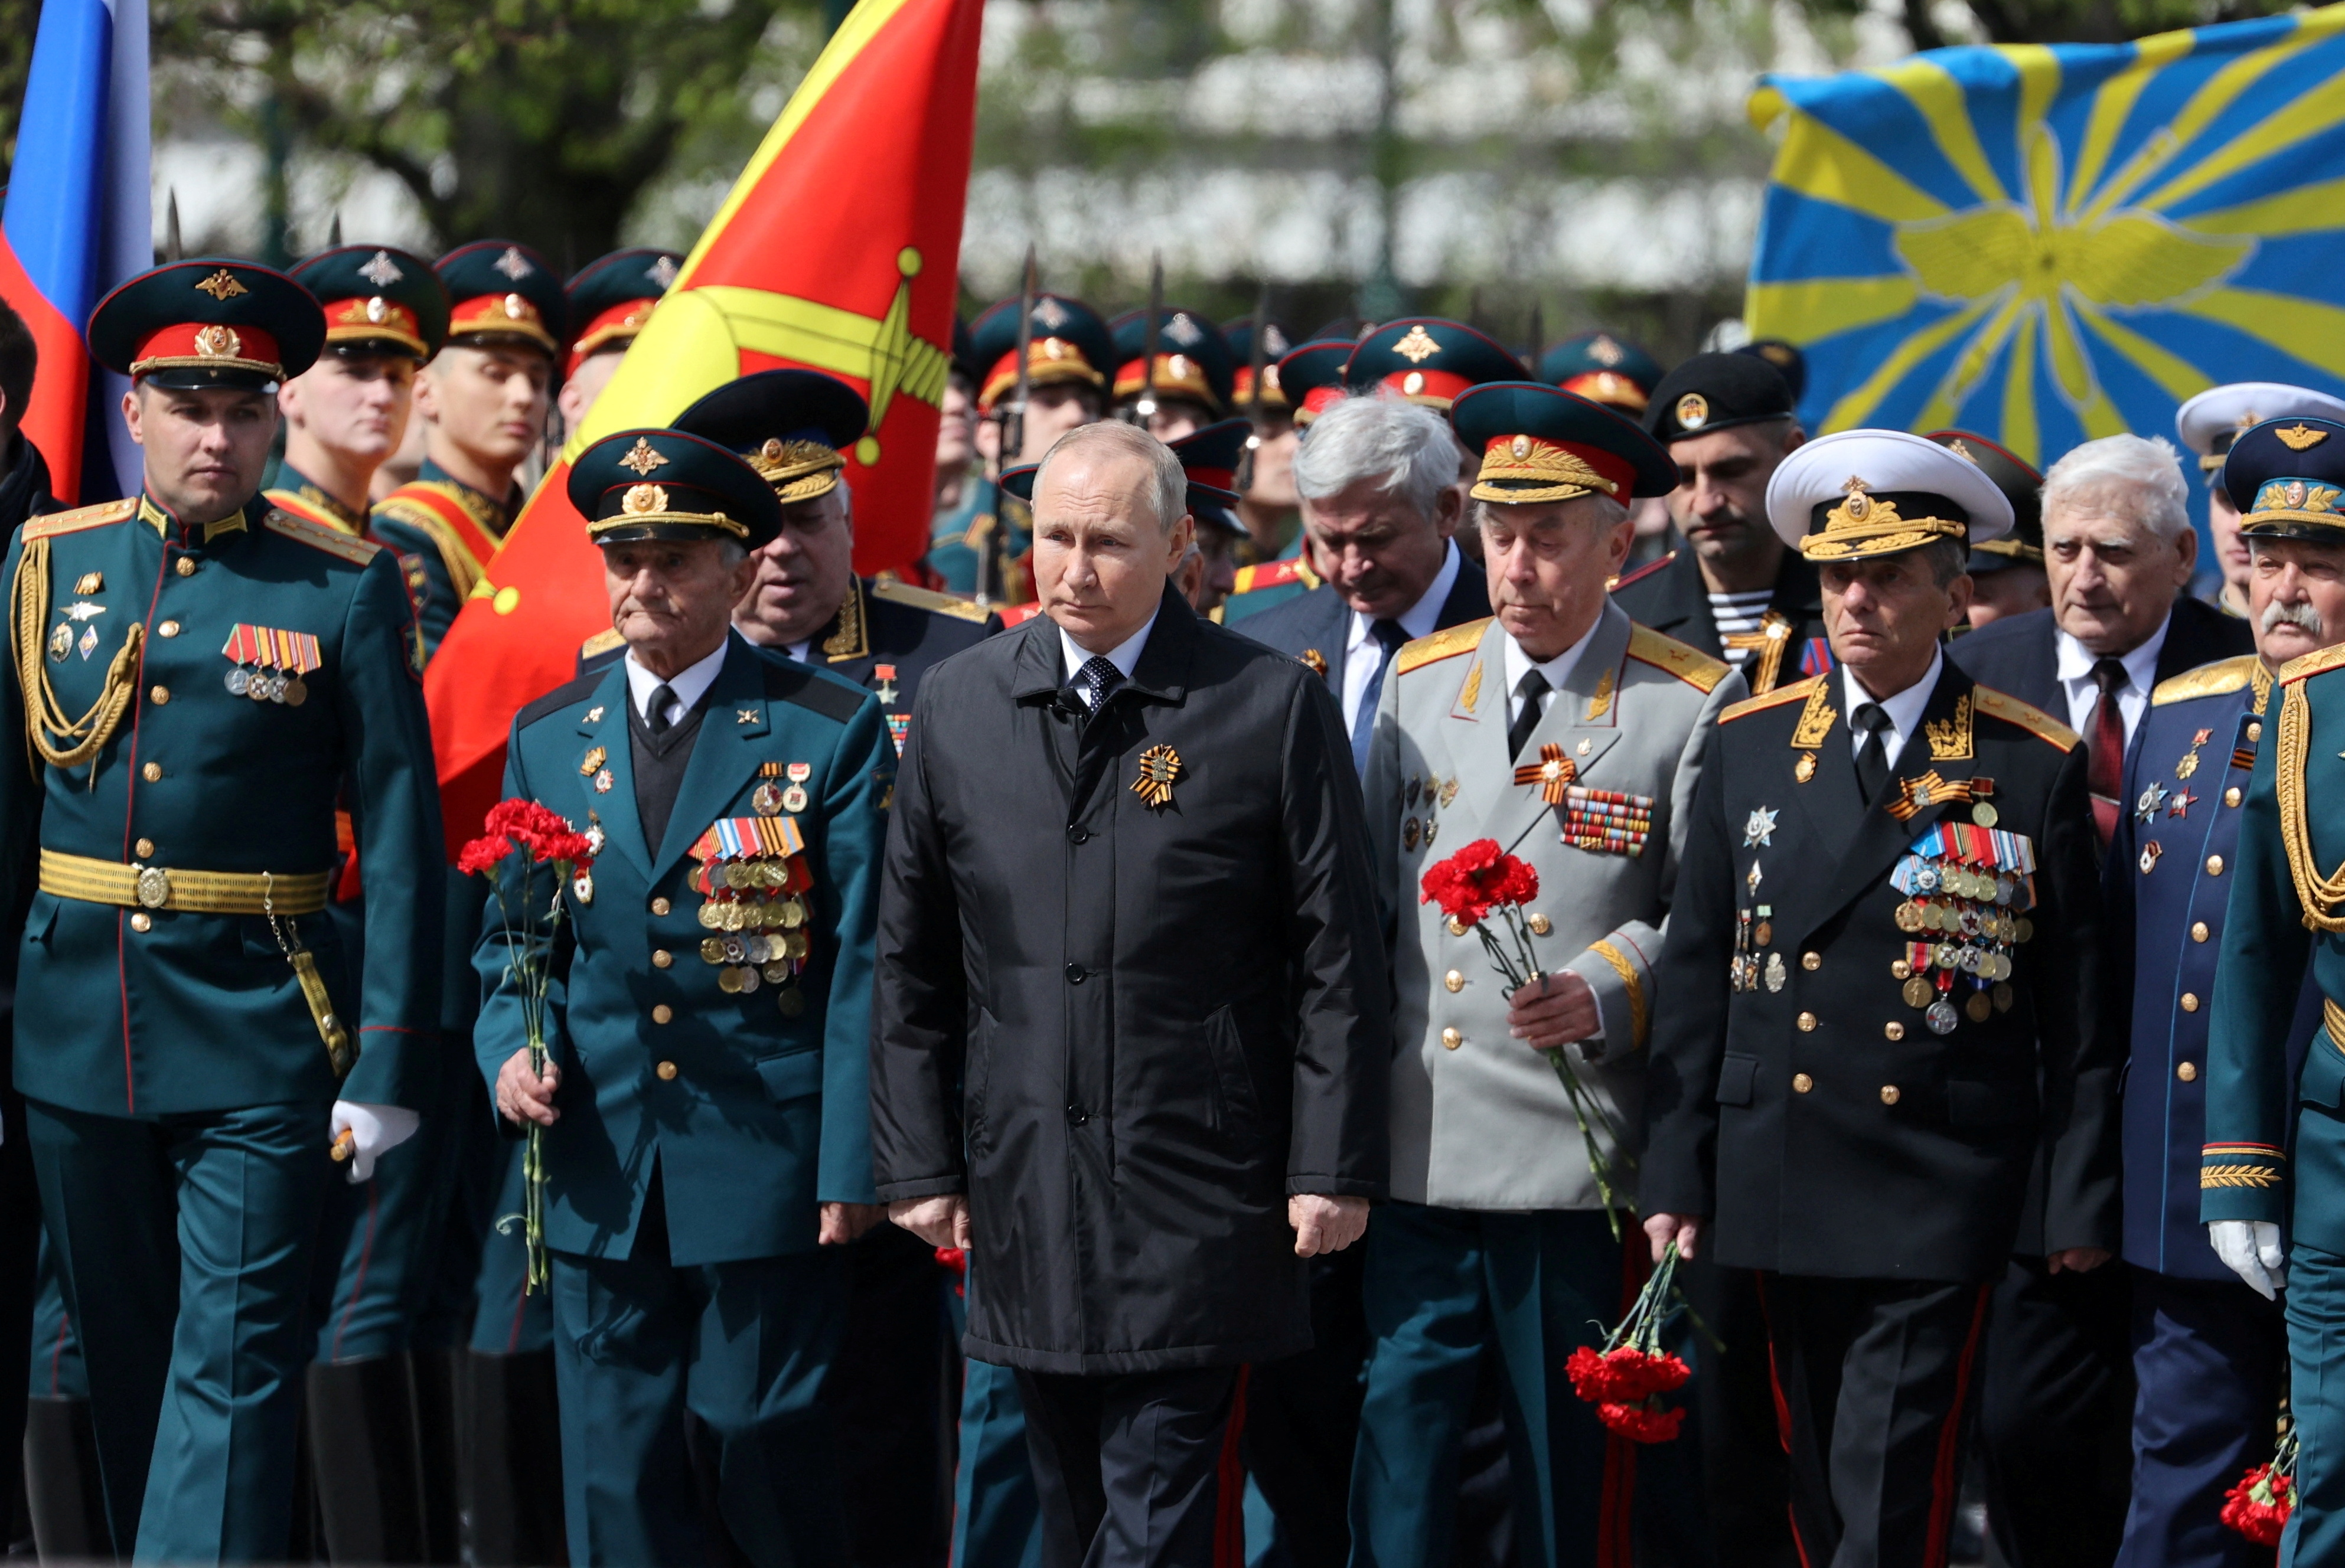 Putin lideró la celebración en Moscú, pero no dio mayores detalles de lo que pasó ni de lo que cree que pasará con la invasión a Ucrania (Sputnik/Anton Novoderzhkin/Pool via REUTERS)